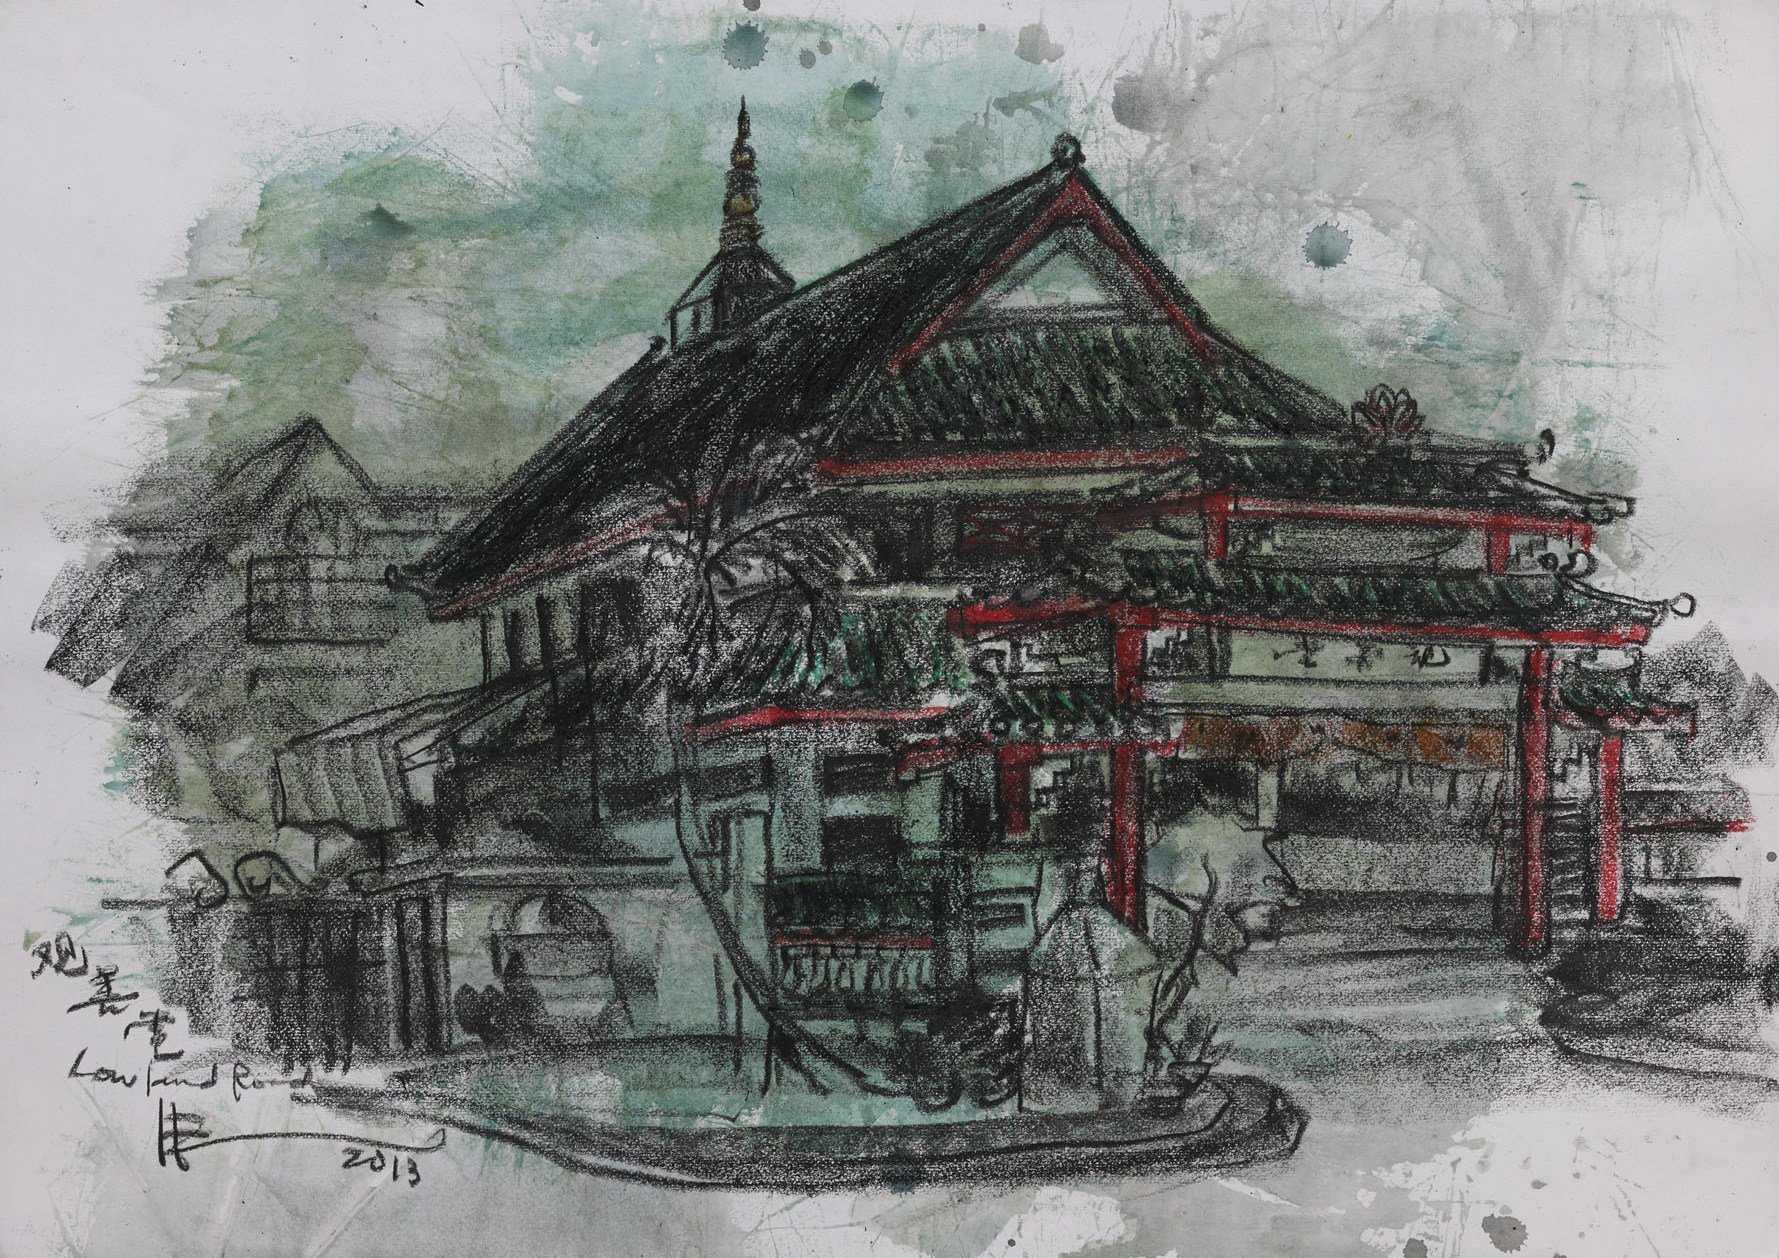 Kwan Siang Tng Temple